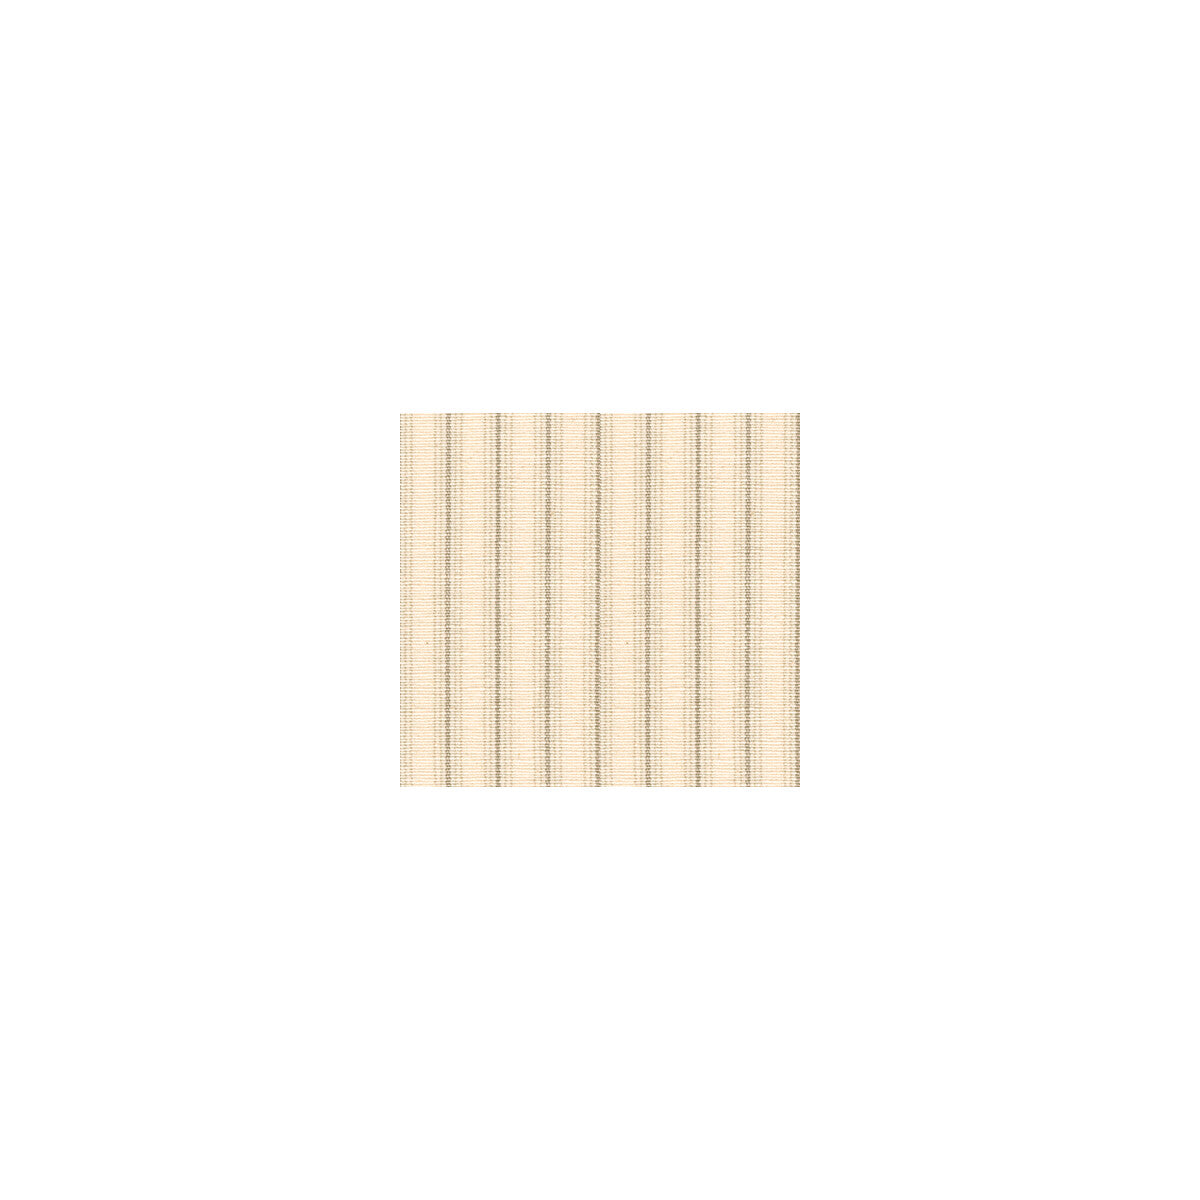 Kravet Basics fabric in 30292-1116 color - pattern 30292.1116.0 - by Kravet Basics